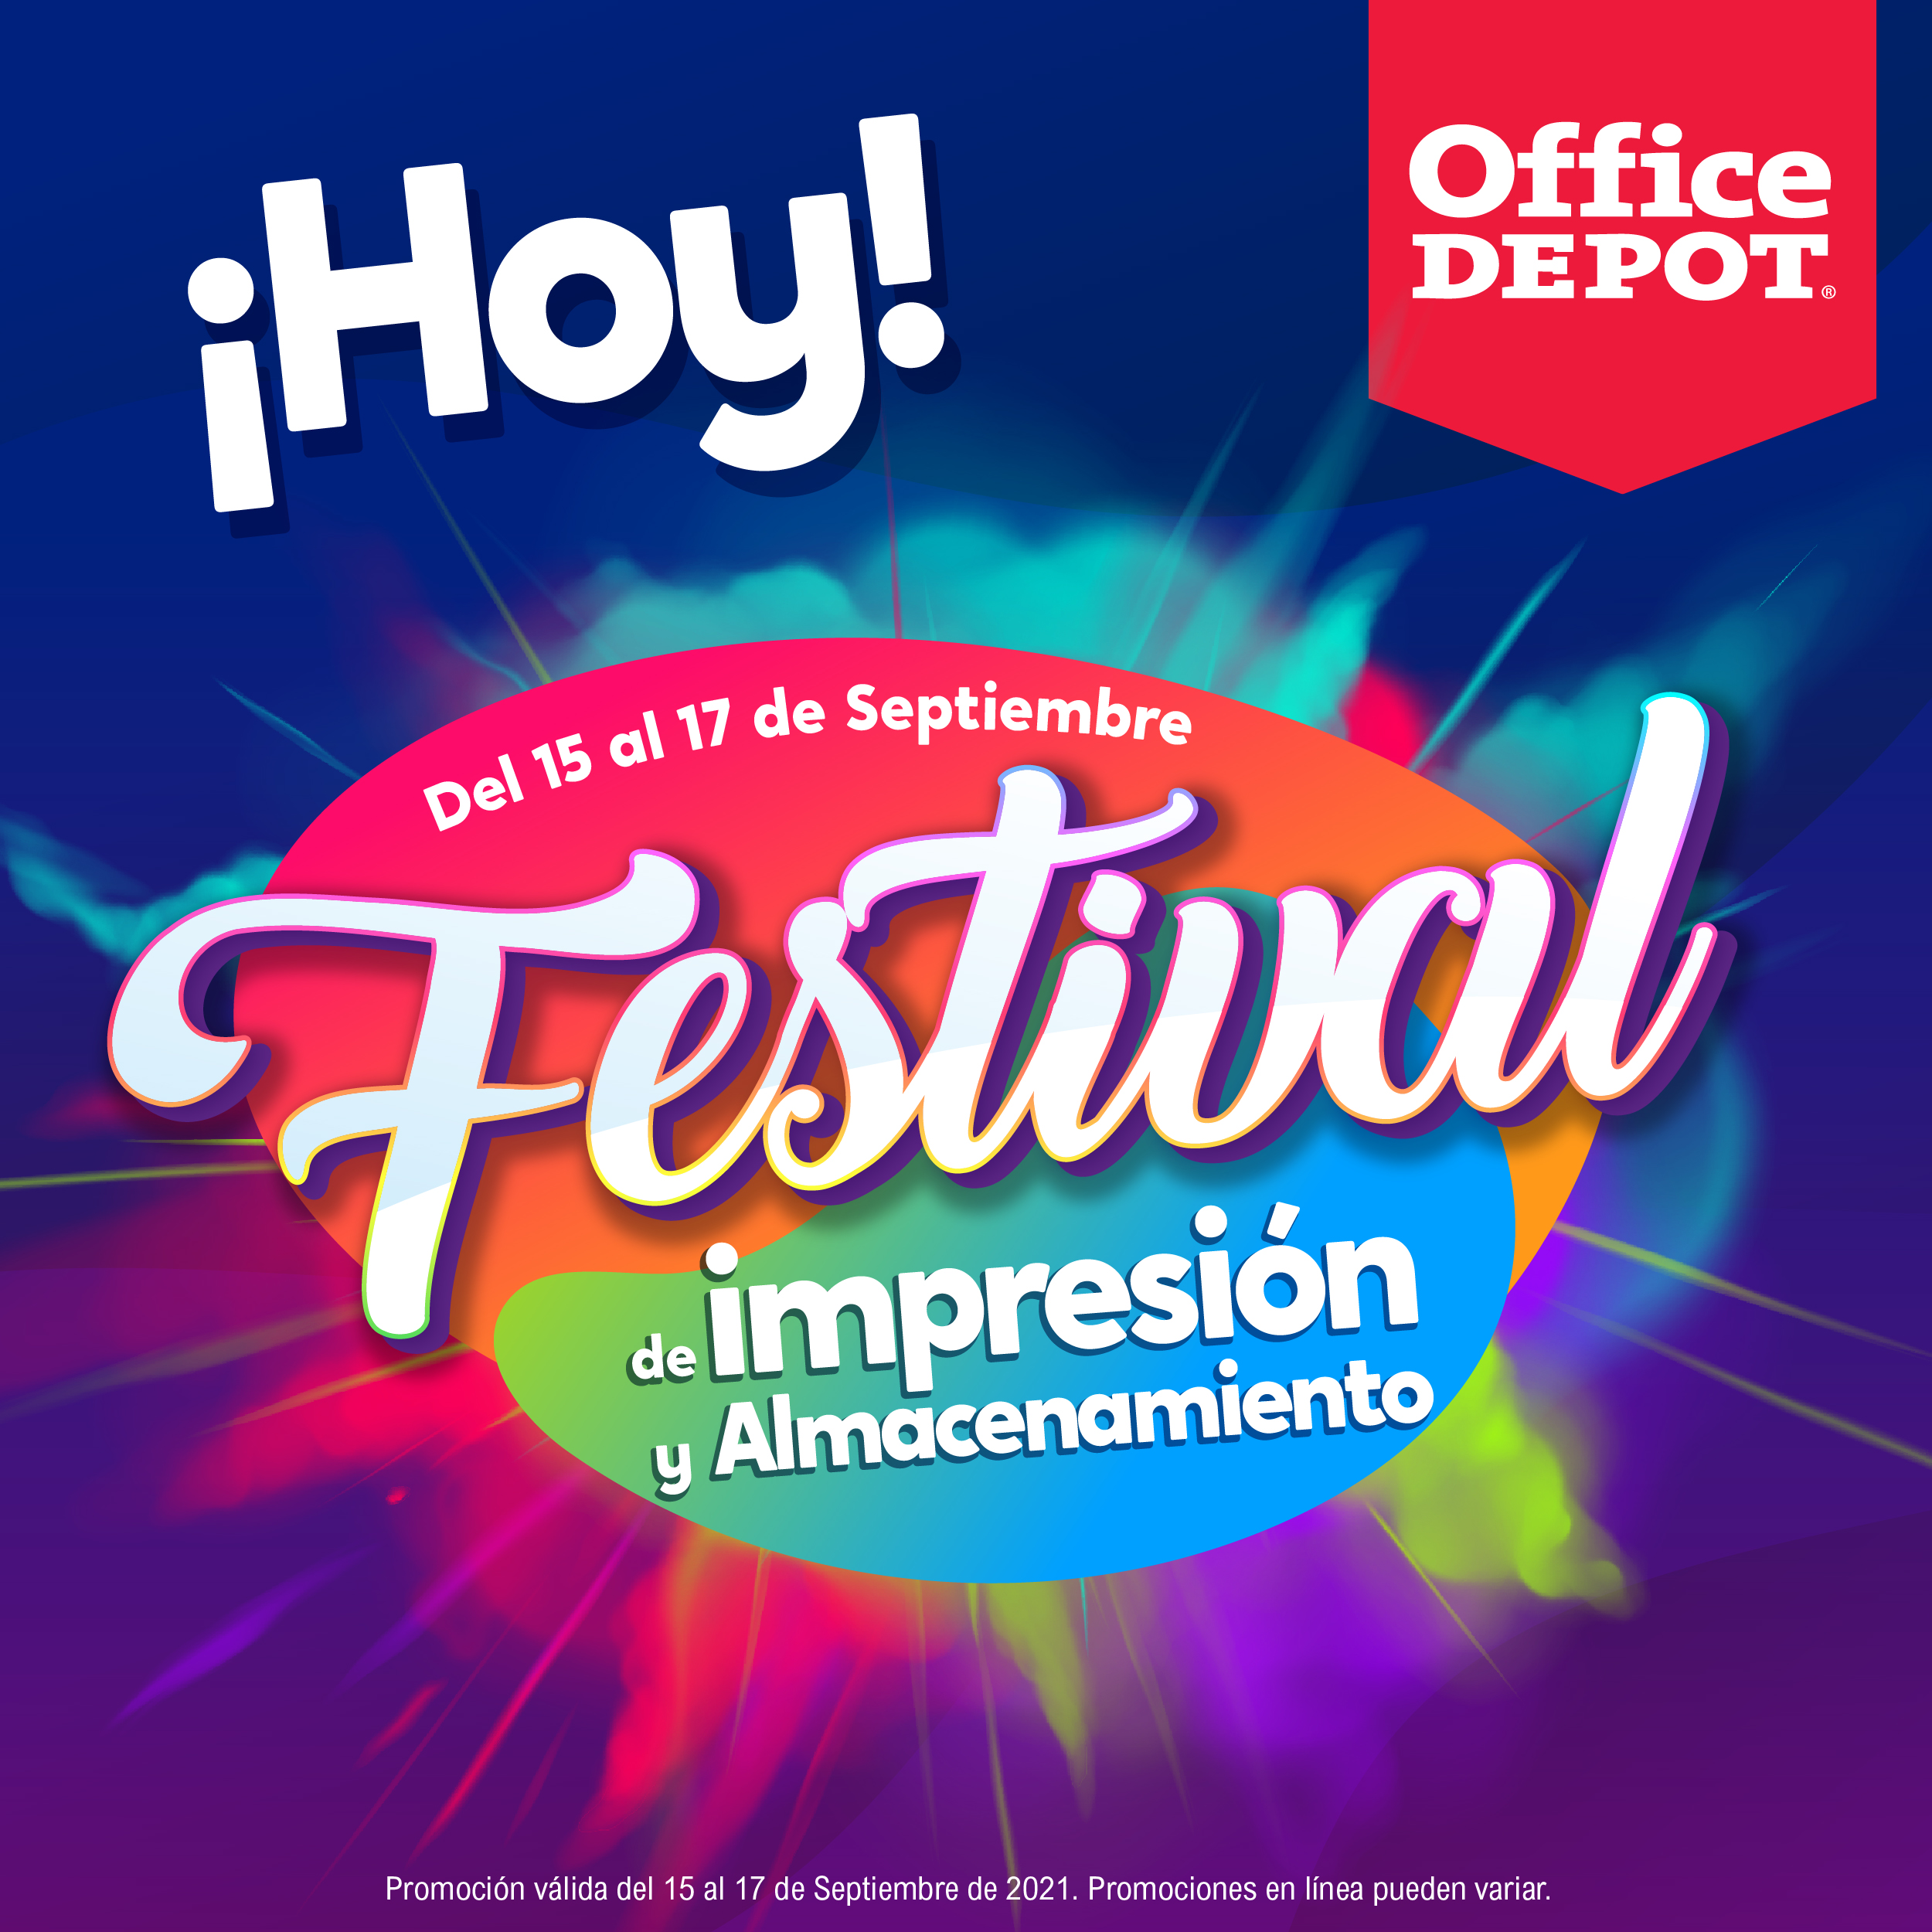 Office Depot El Salvador on Twitter: 